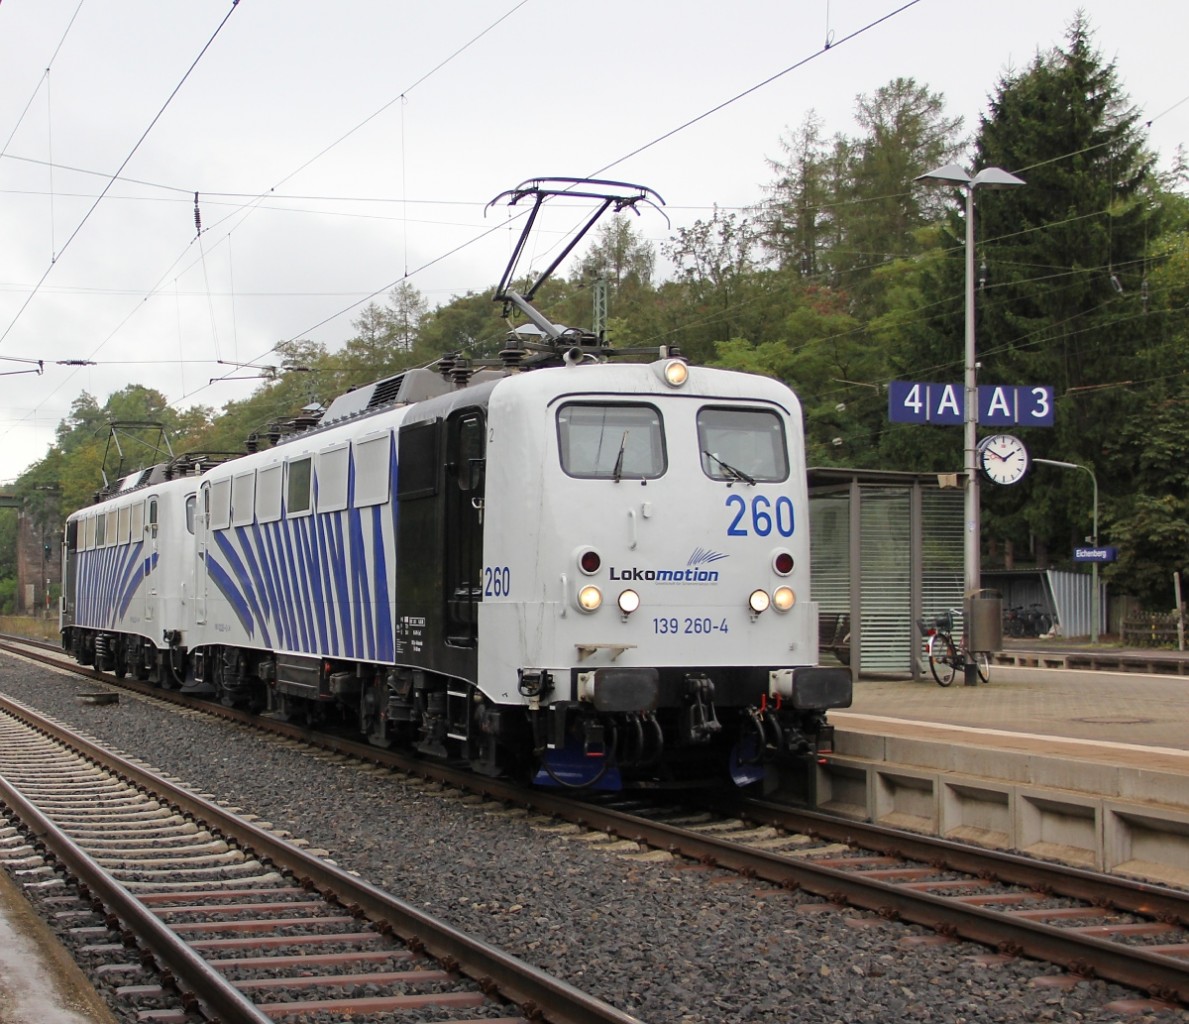 139 260-4 mit 139 213-3 der Lokomotion als Lokzug in Fahrtrichtung Norden. Aufgenommen am 14.09.2013 in Eichenberg.